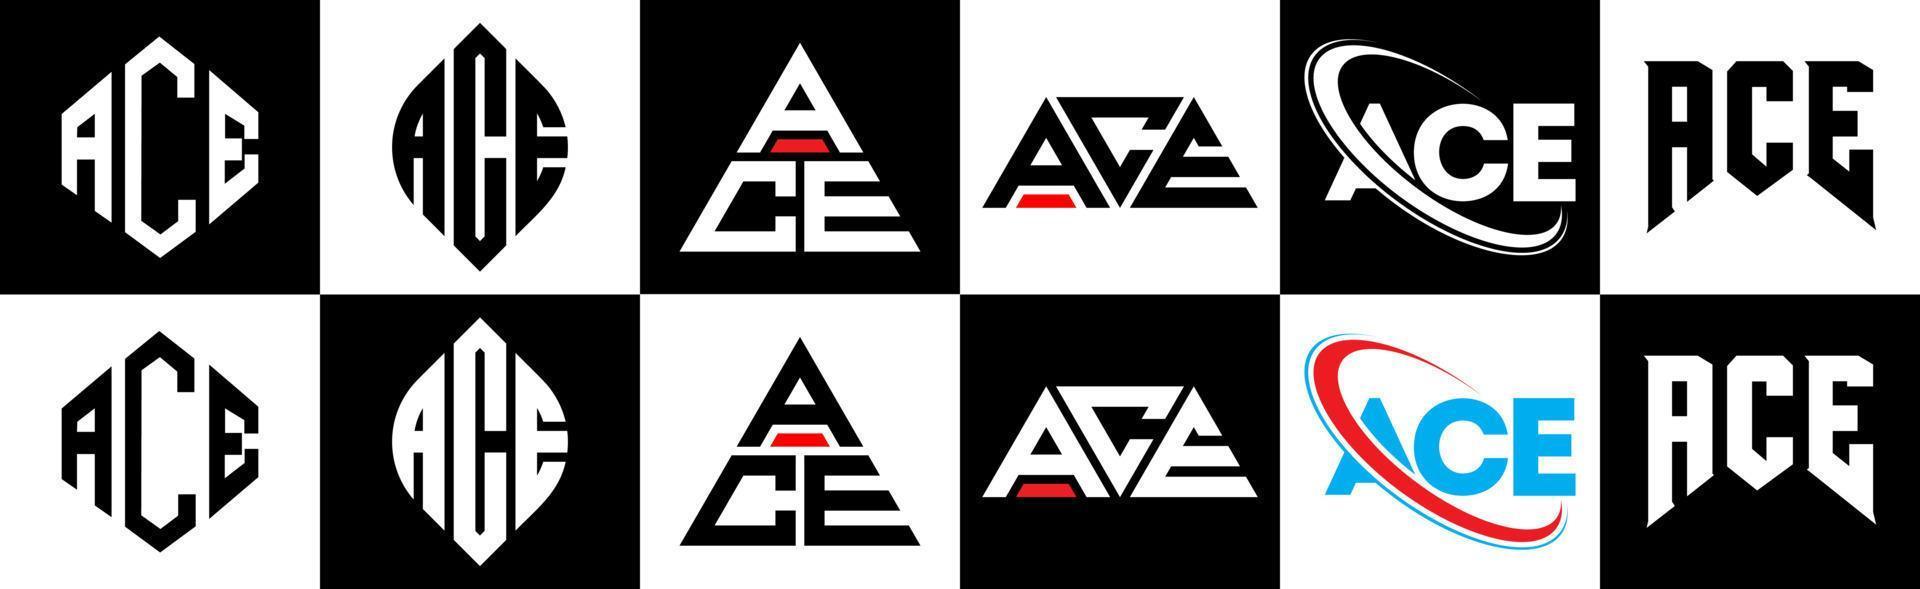 création de logo de lettre ace en six styles. ace polygone, cercle, triangle, hexagone, style plat et simple avec logo de lettre de variation de couleur noir et blanc dans un plan de travail. ace logo minimaliste et classique vecteur